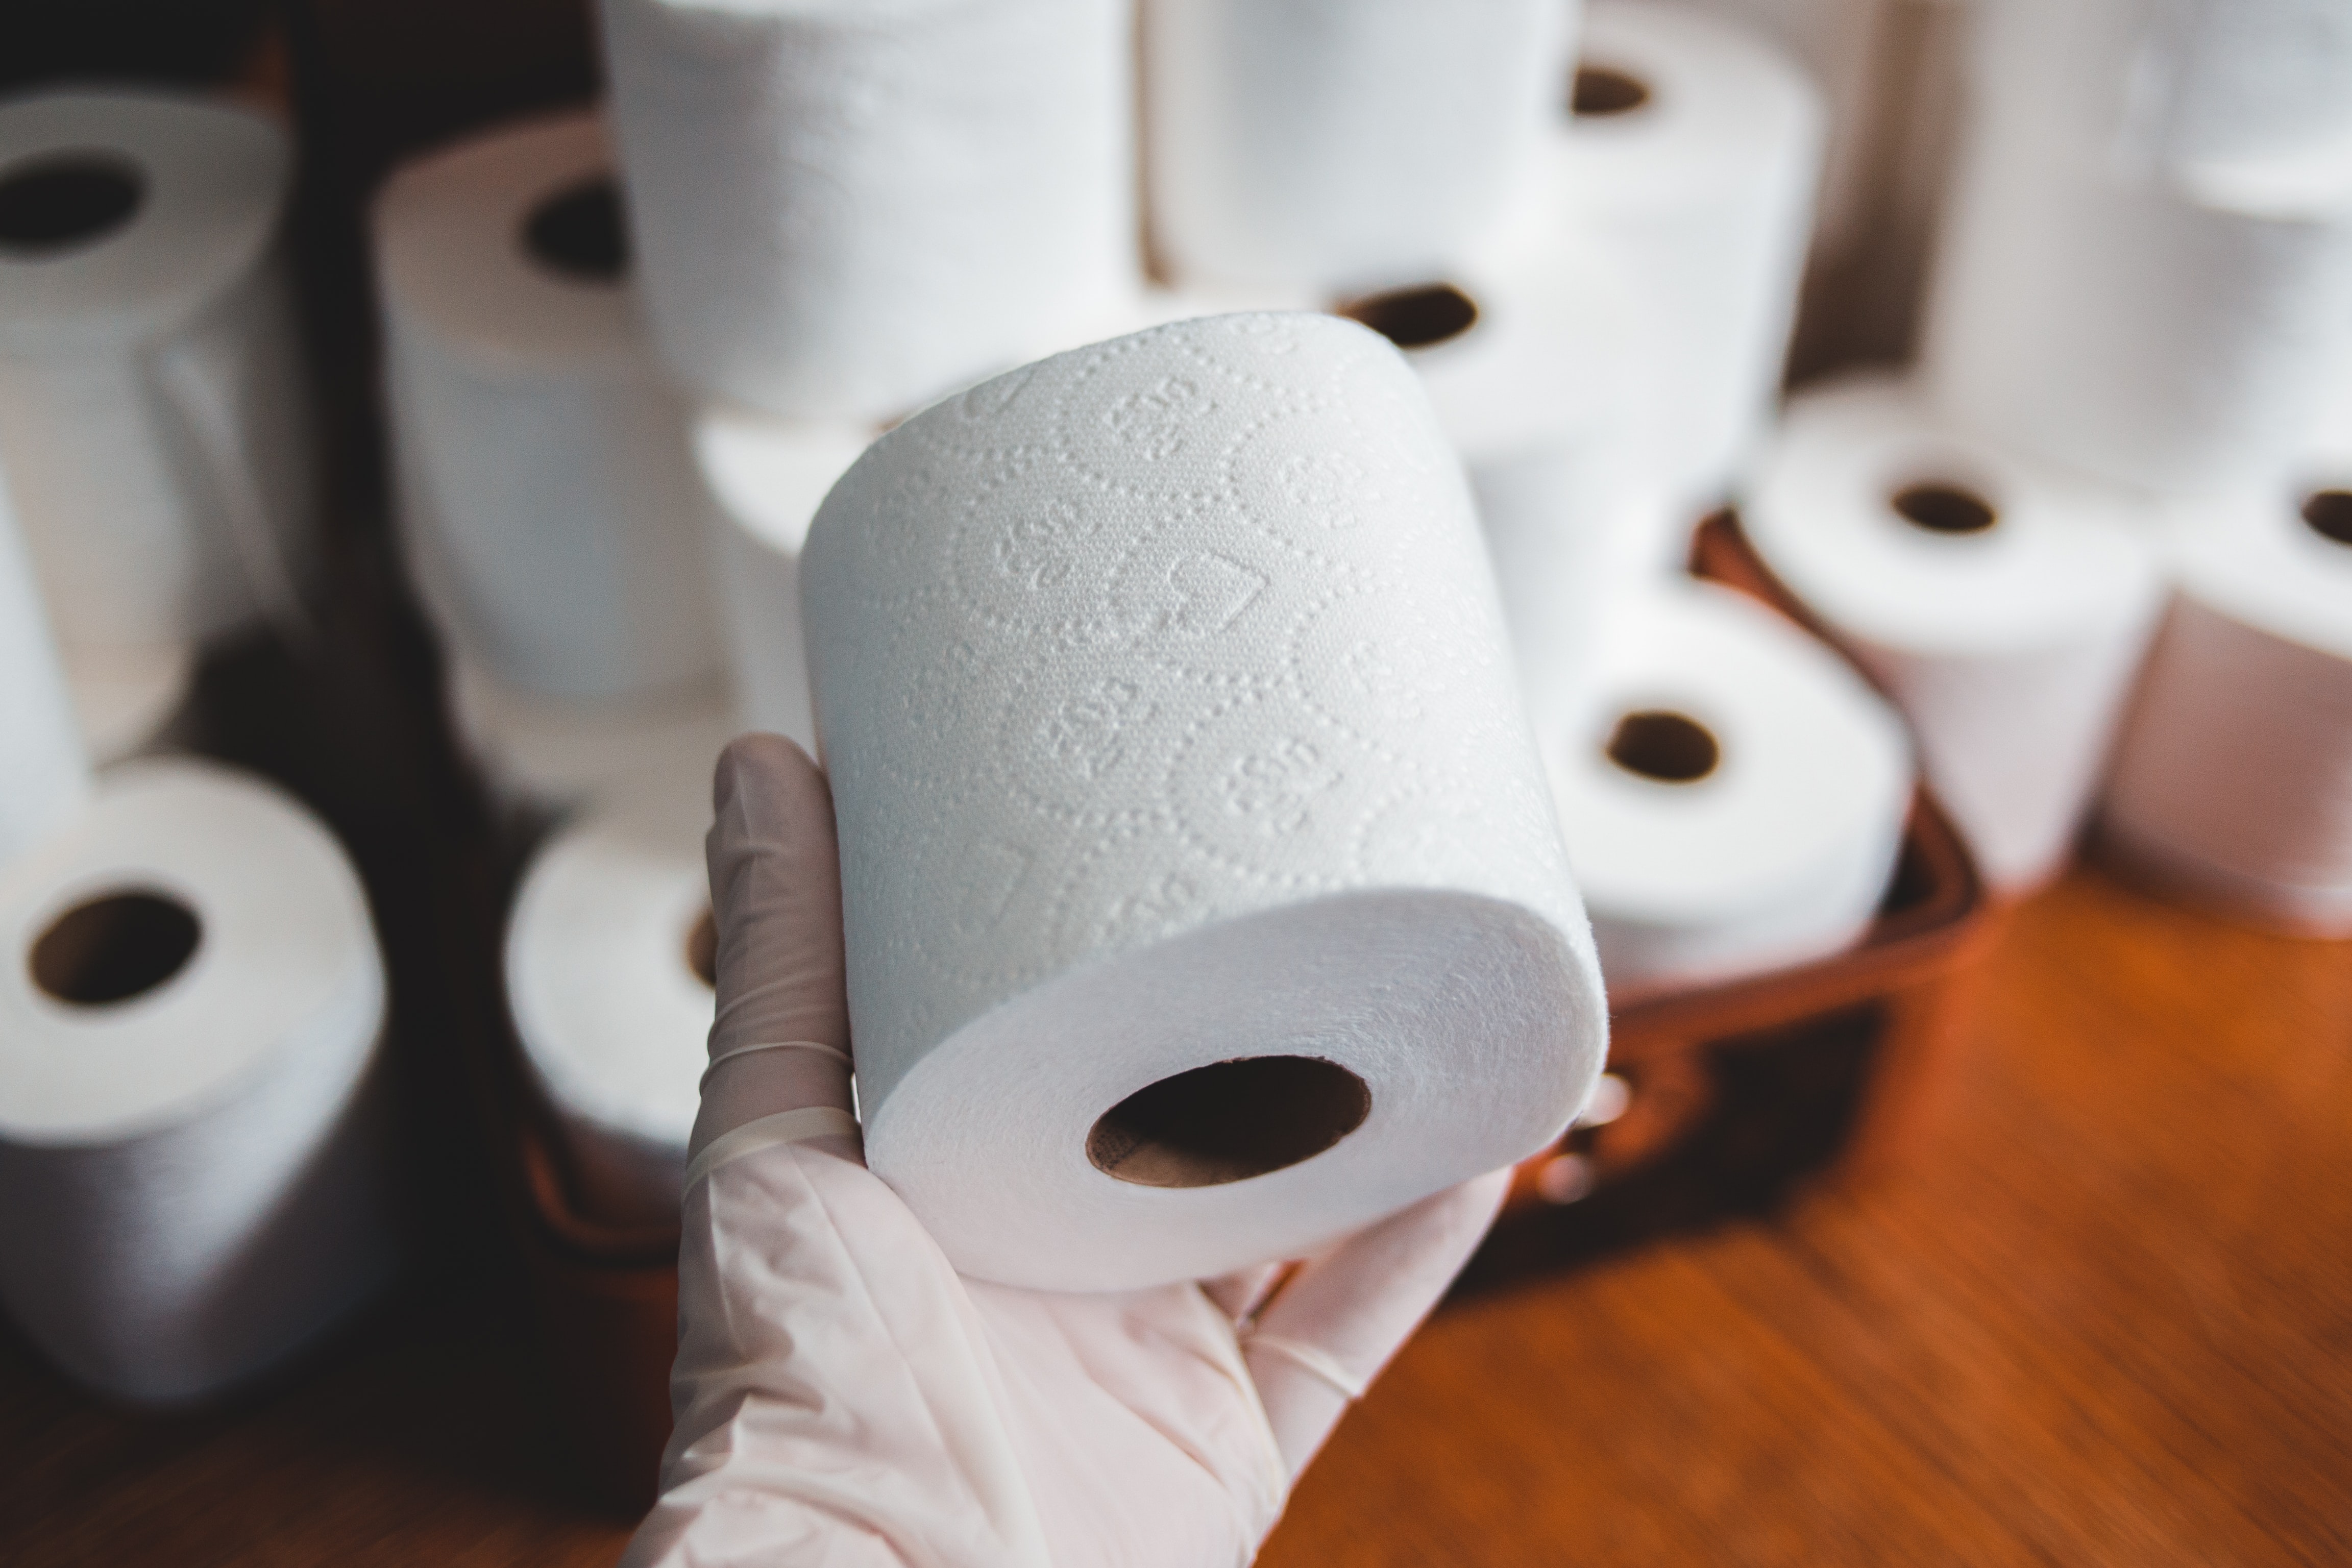 Špeciálny toaletný papier zaistí, že sa rozloží pri kontakte s vodou.